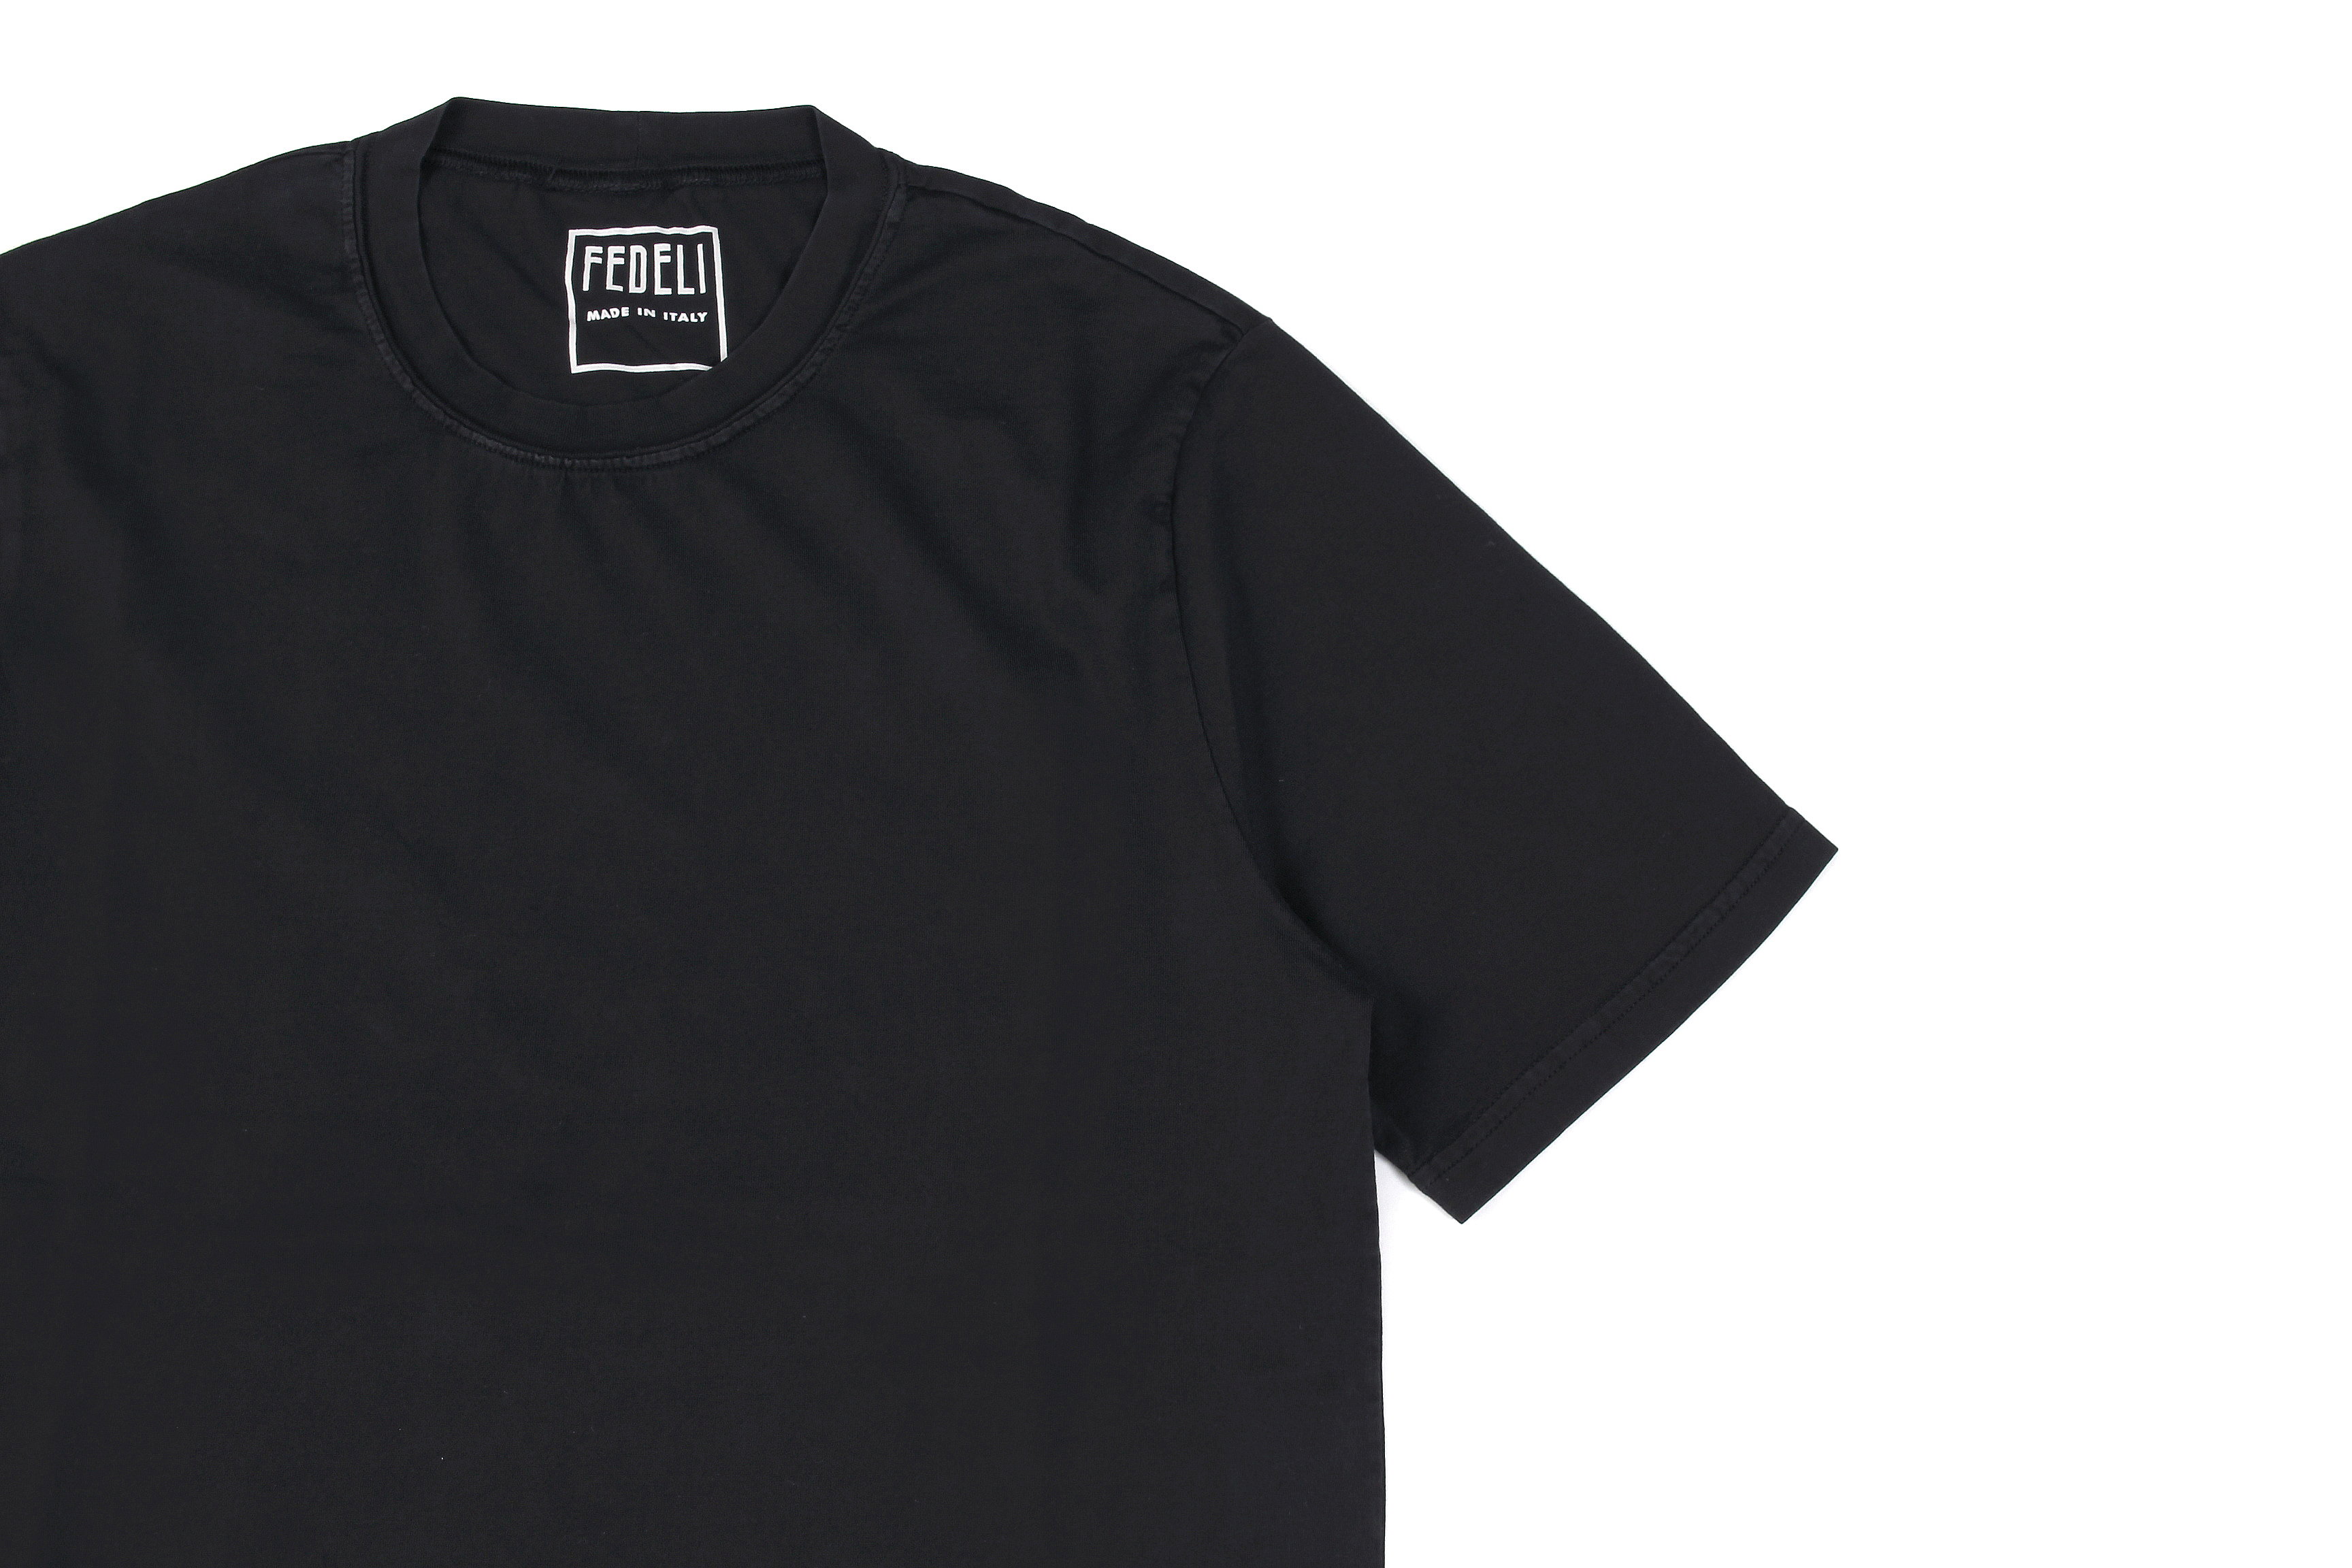 FEDELI(フェデーリ) Crew Neck T-shirt (クルーネック Tシャツ) ギザコットン Tシャツ BLACK (ブラック・36) made in italy (イタリア製) 2020 春夏 【ご予約開始】愛知 名古屋 altoediritto アルトエデリット TEE